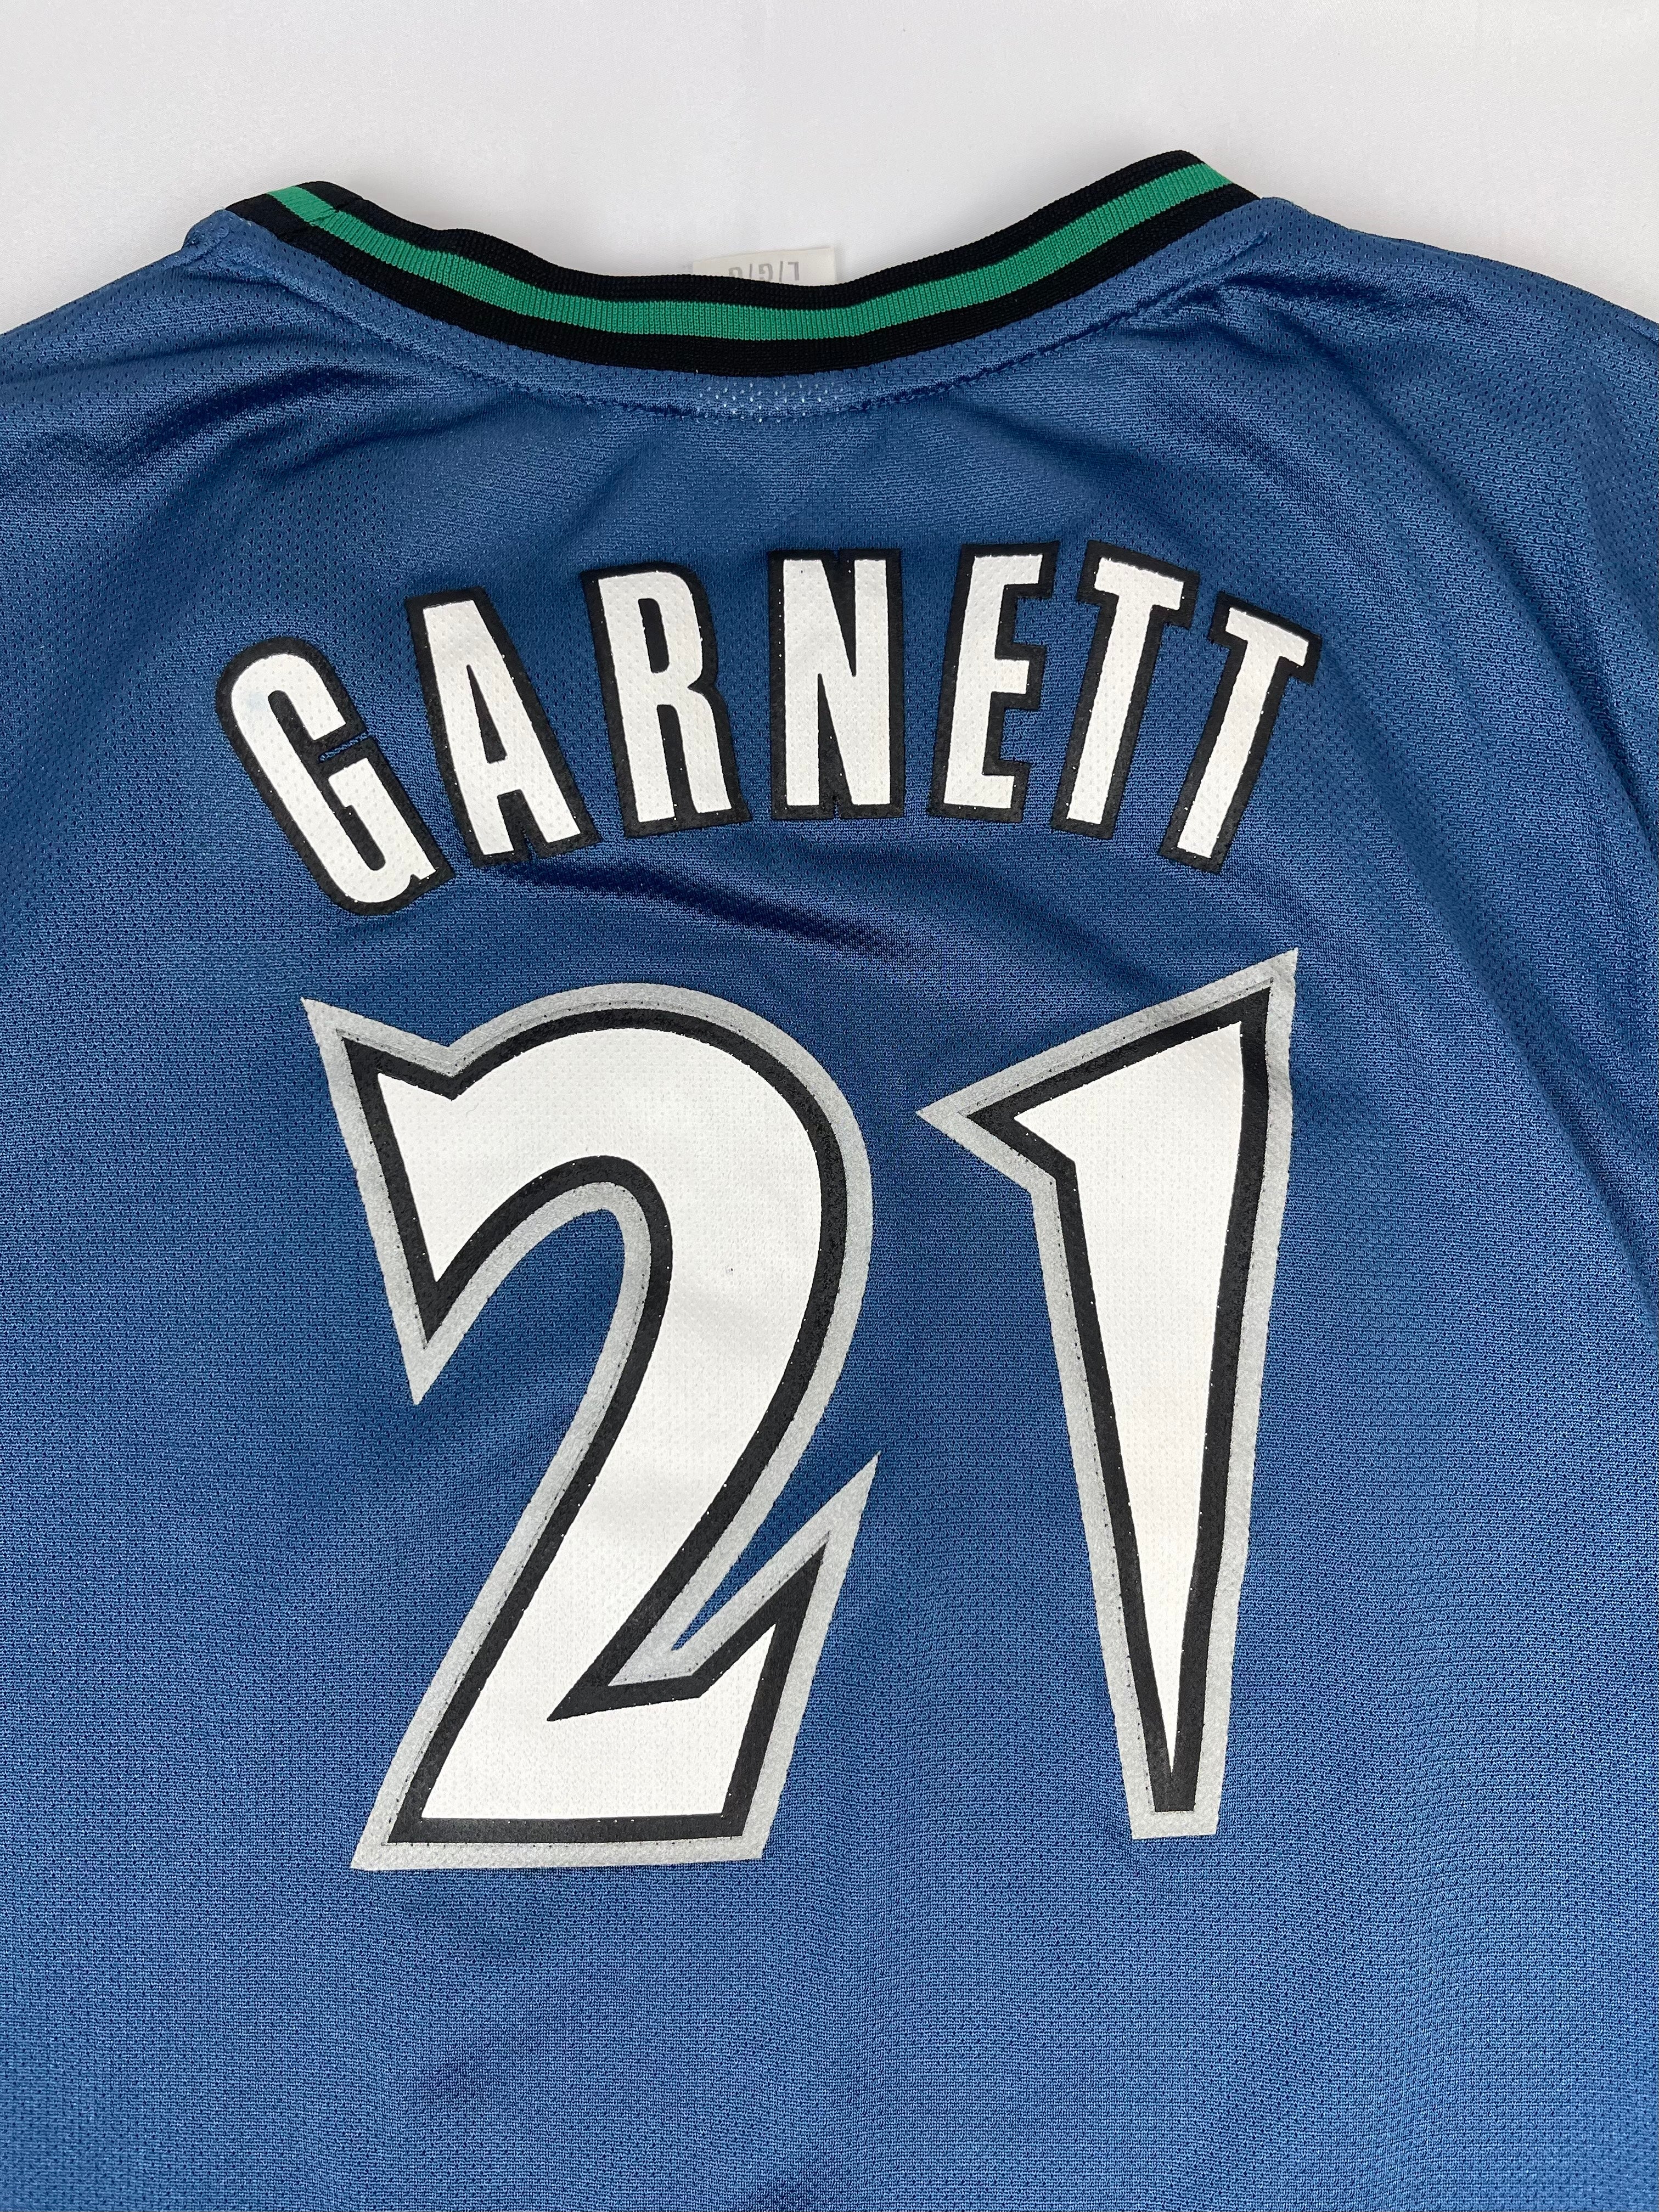 Reebok NBA Minnesota Timberwolves Kevin Garnett #21 Women's Pink Jersey  Size XL.